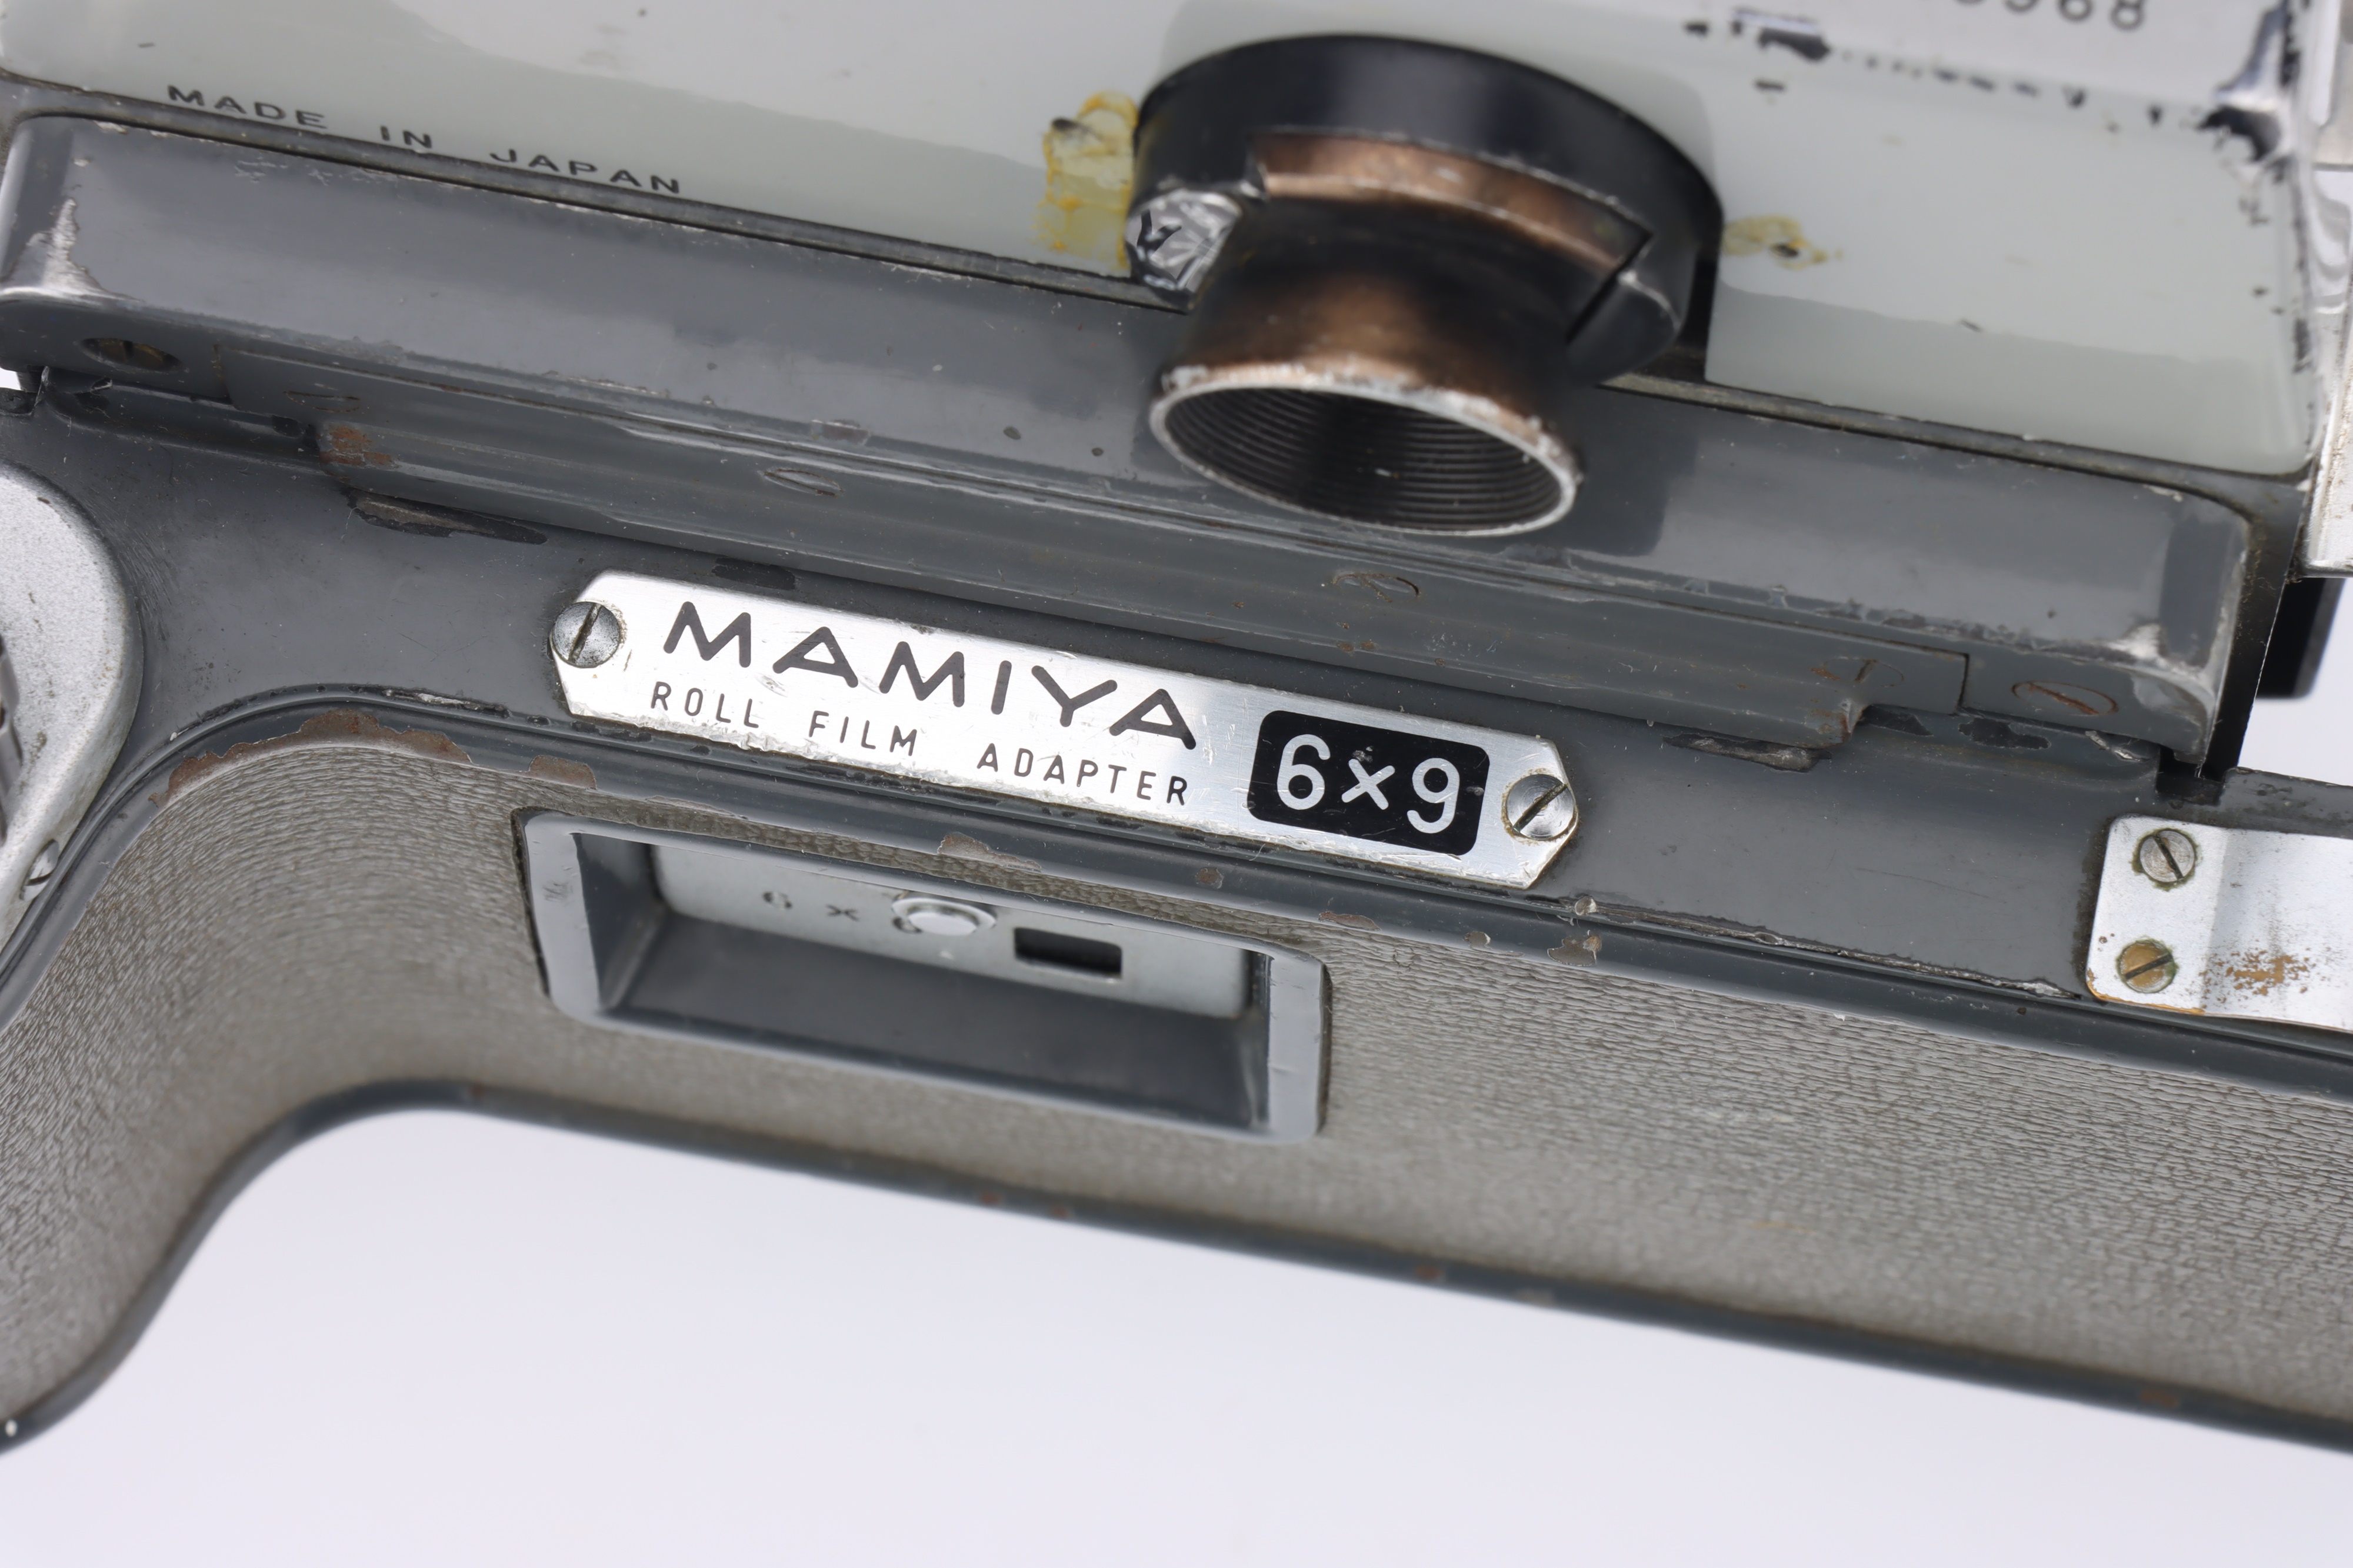 A Mamiya 23 Press Rangefinder Camera - Image 3 of 3